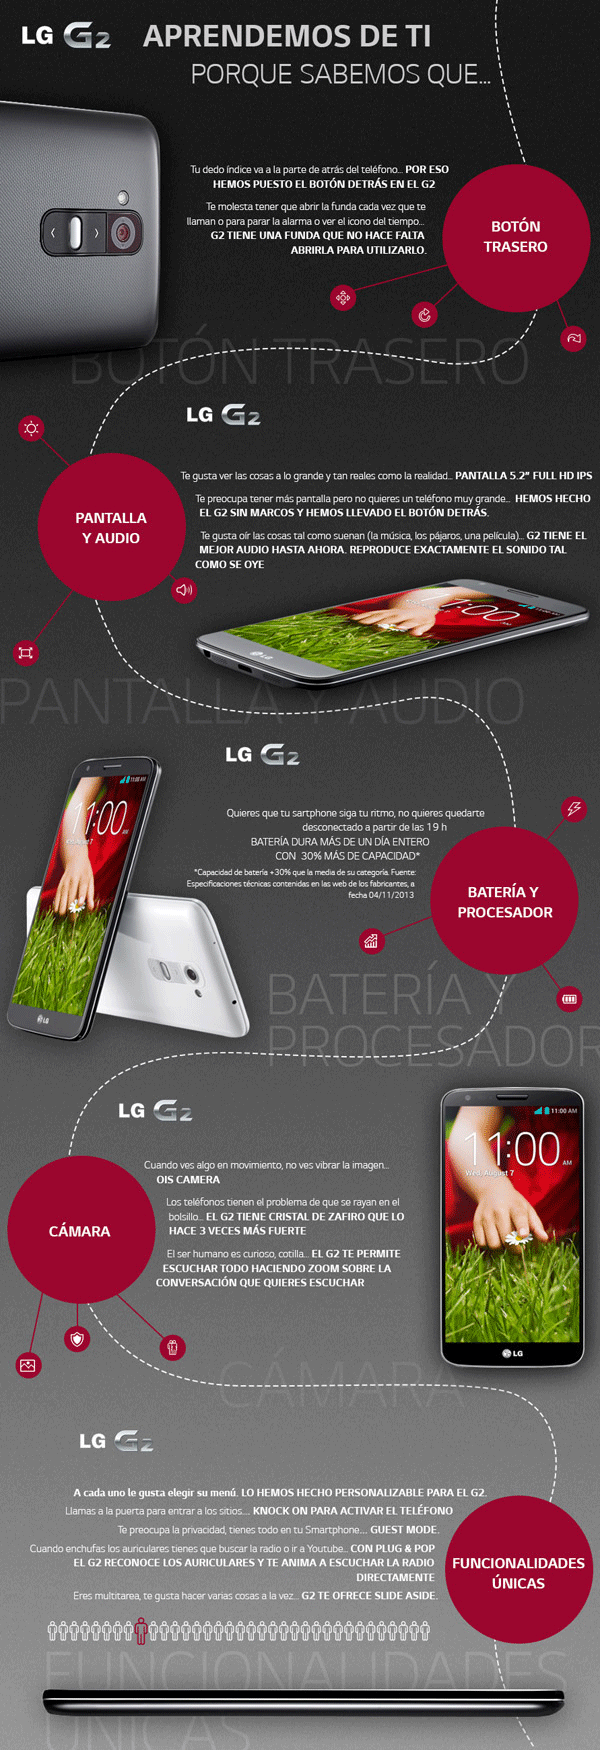 LG G2, características y funciones en una infografía 